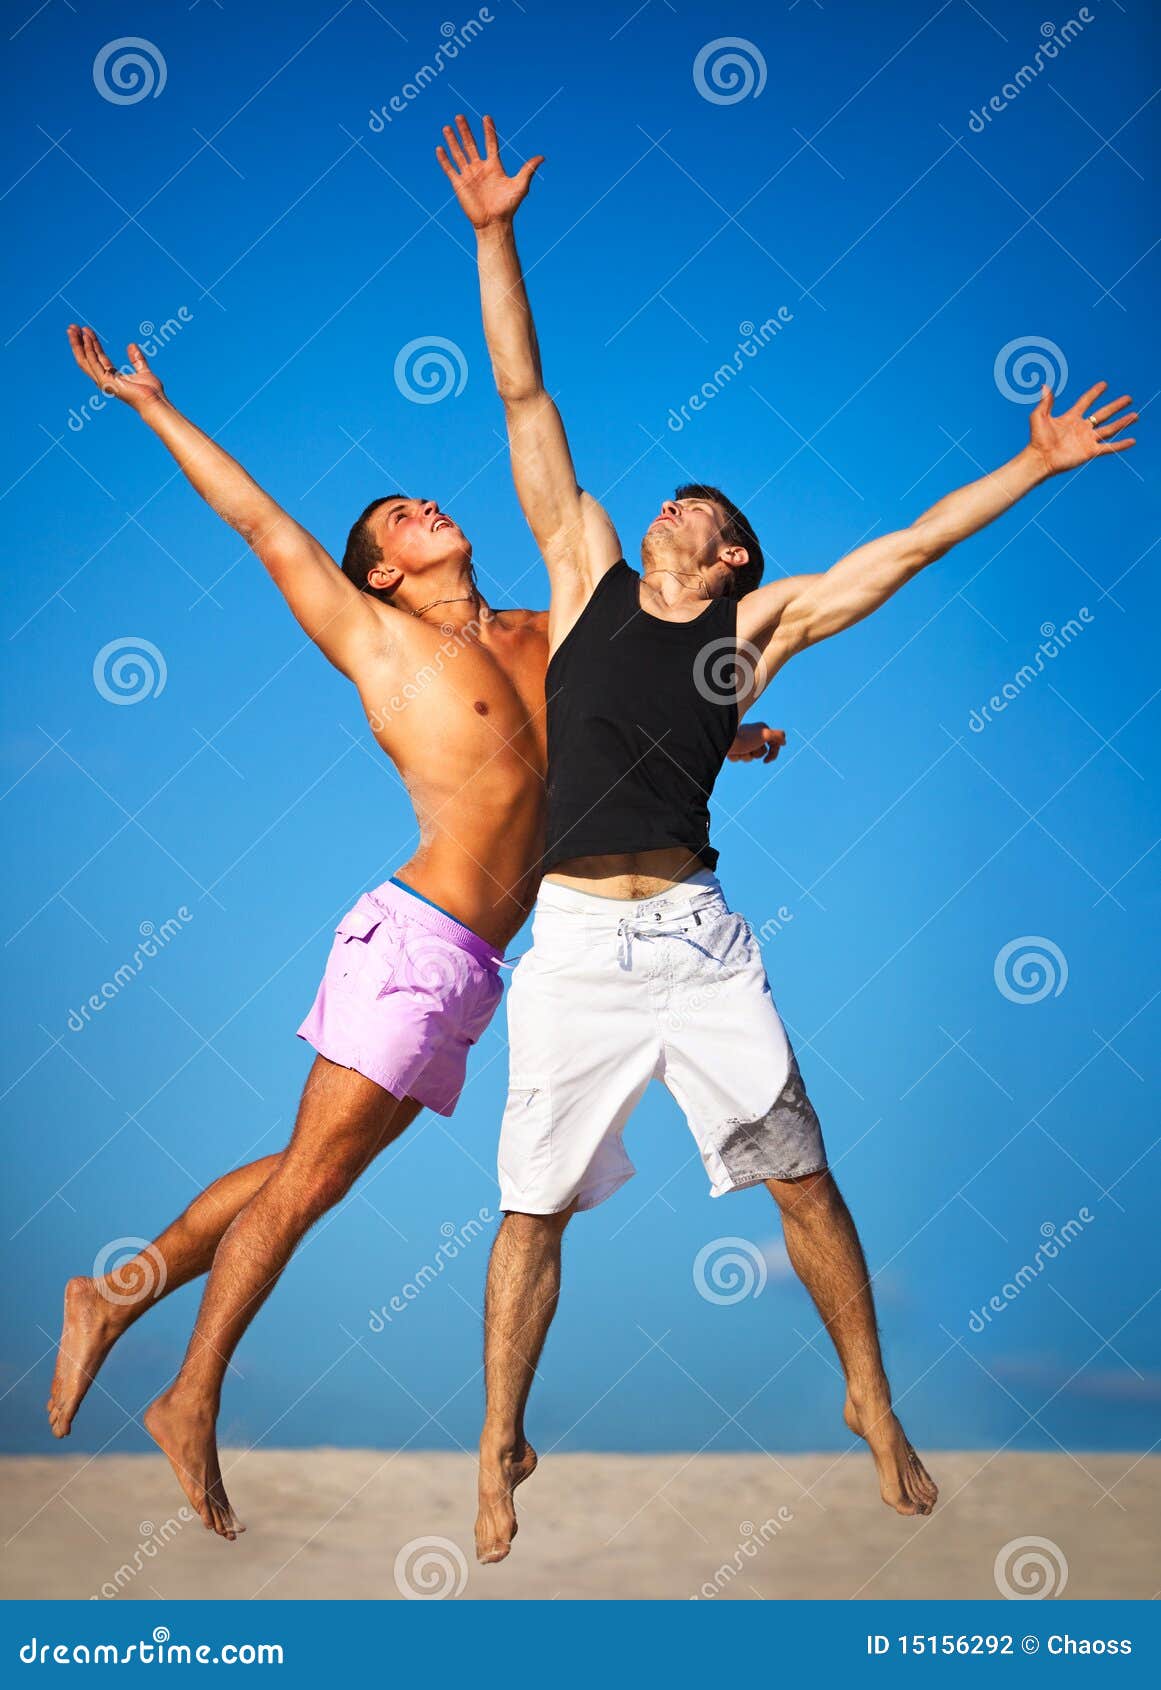 Оба два спортсмена. Два спортсмена. Прыжок вверх. Спортсмен прыгает вверх. Картинка два спортсмена рчдлм.